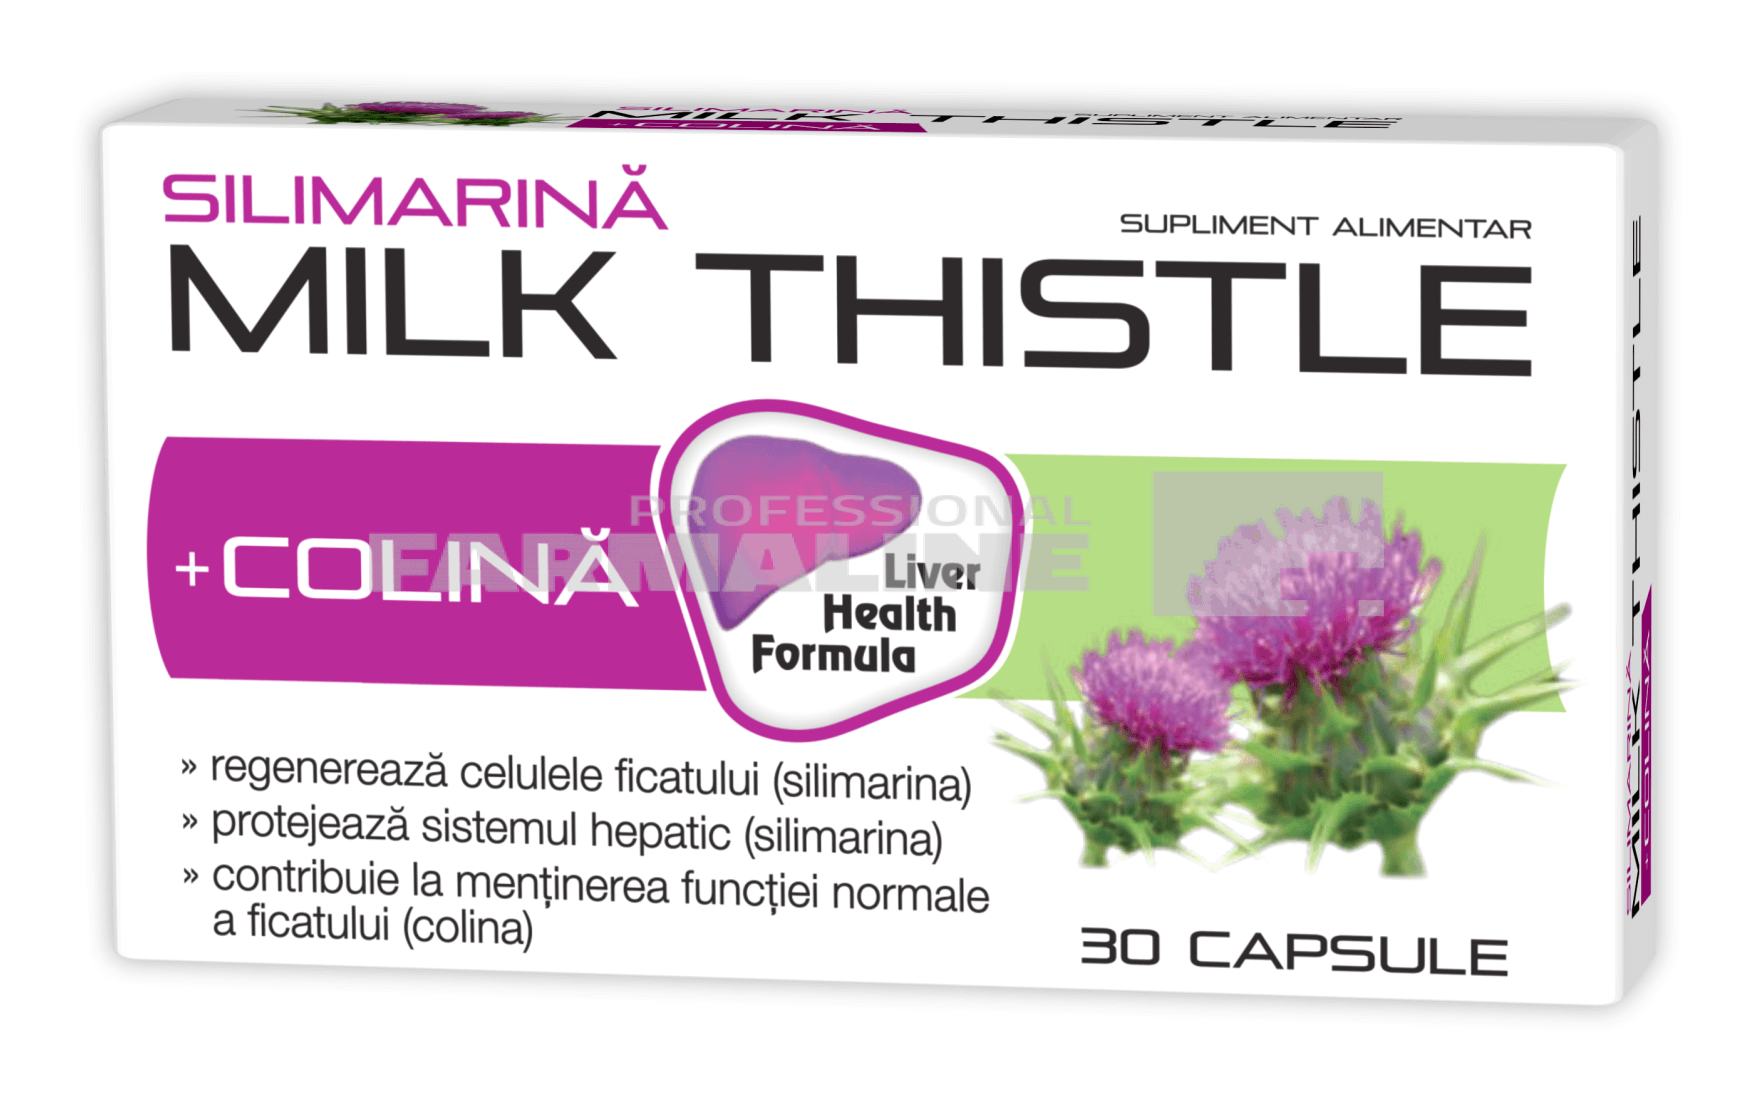 silimarina milk thistle 1000 mg pret farmacia tei Silimarina Milk Thistle + Colina 1000 mg 30 capsule